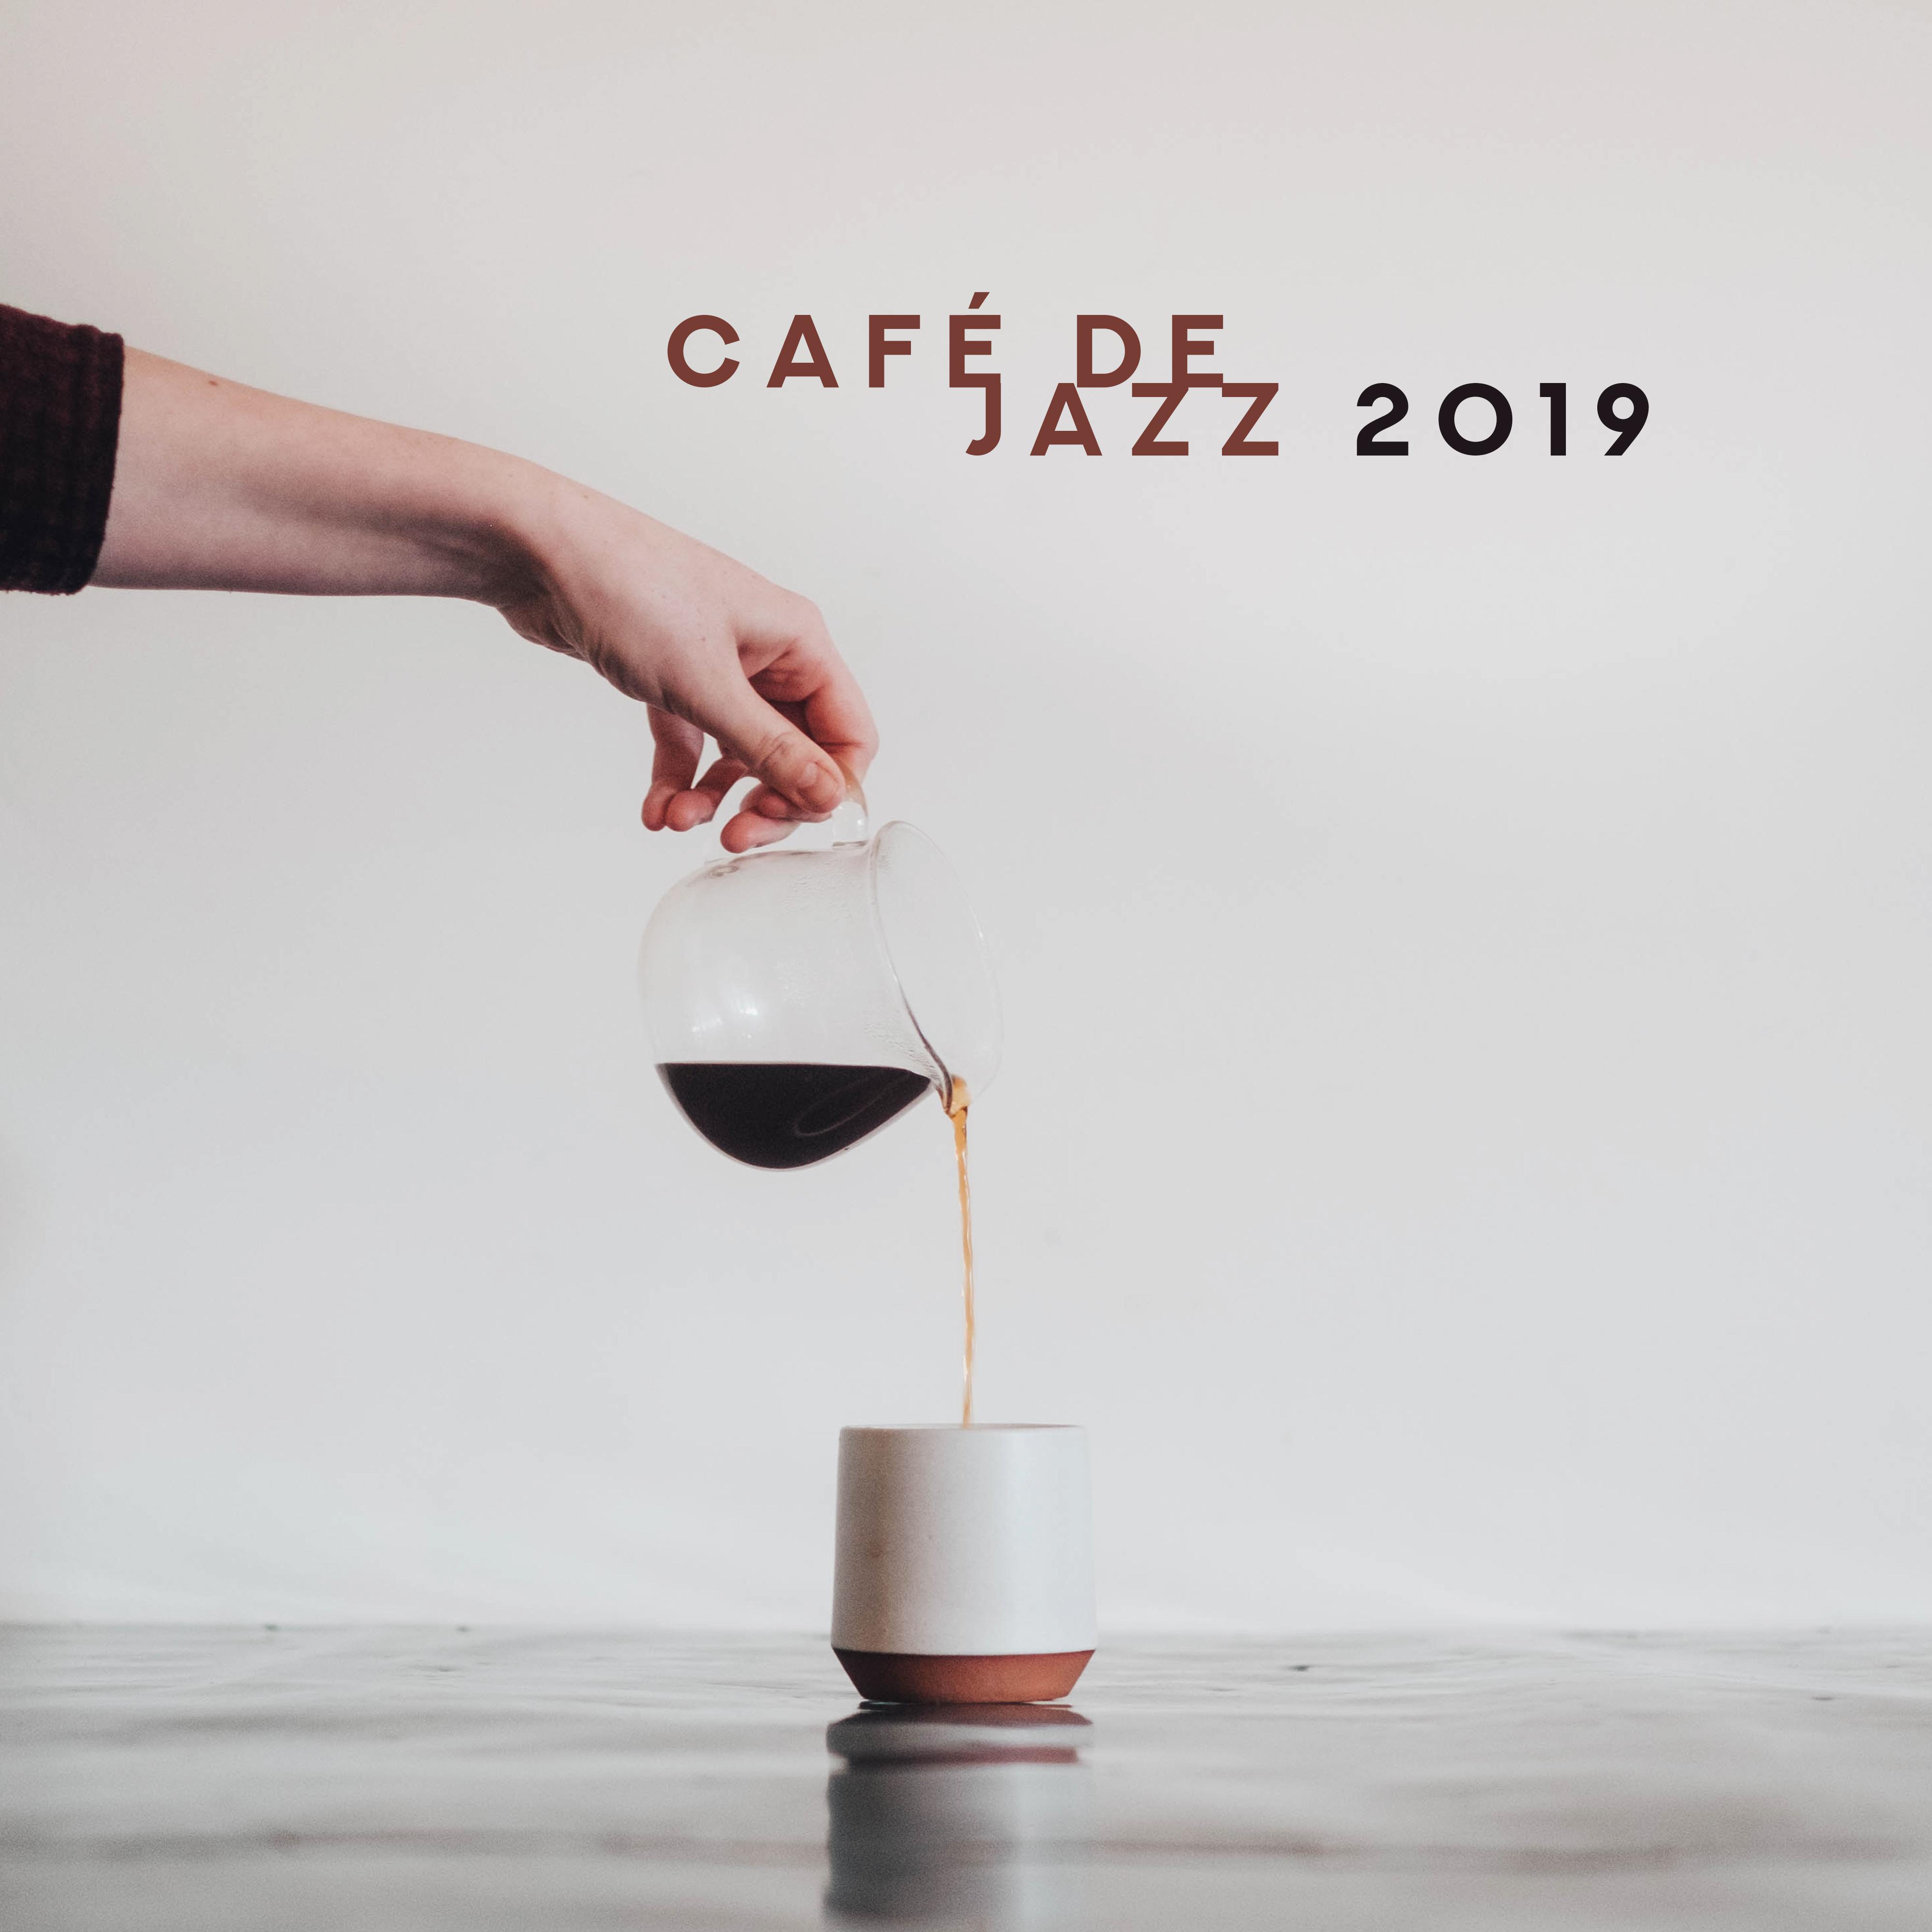 Cafe de jazz 2019